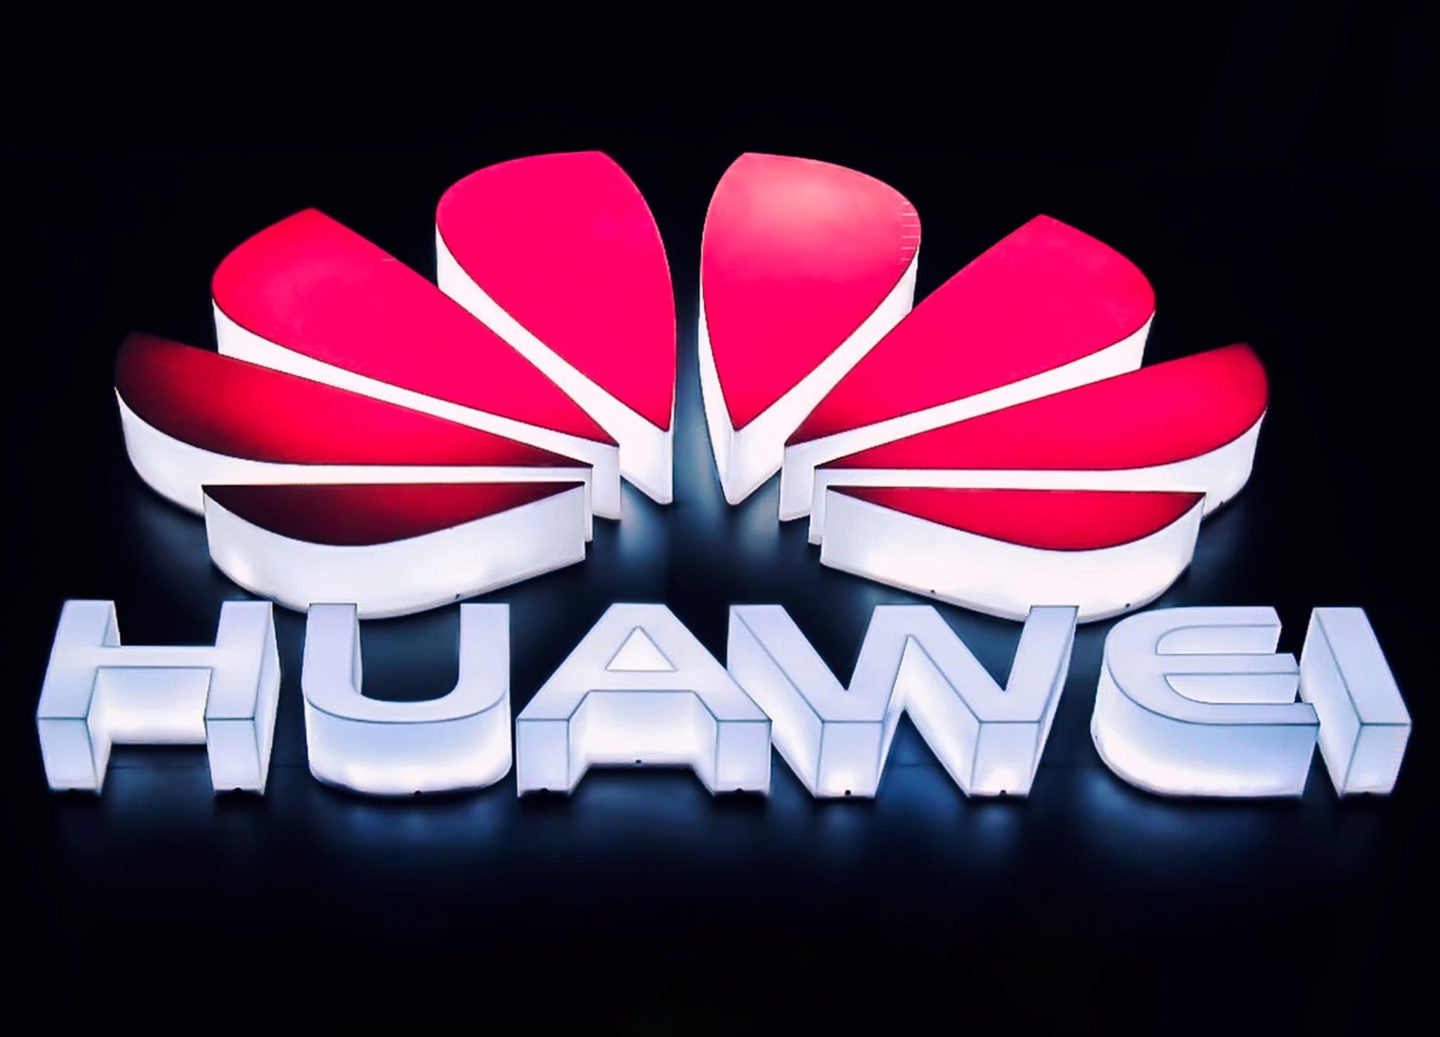 Huawei loses landmark patent case at Supreme Court